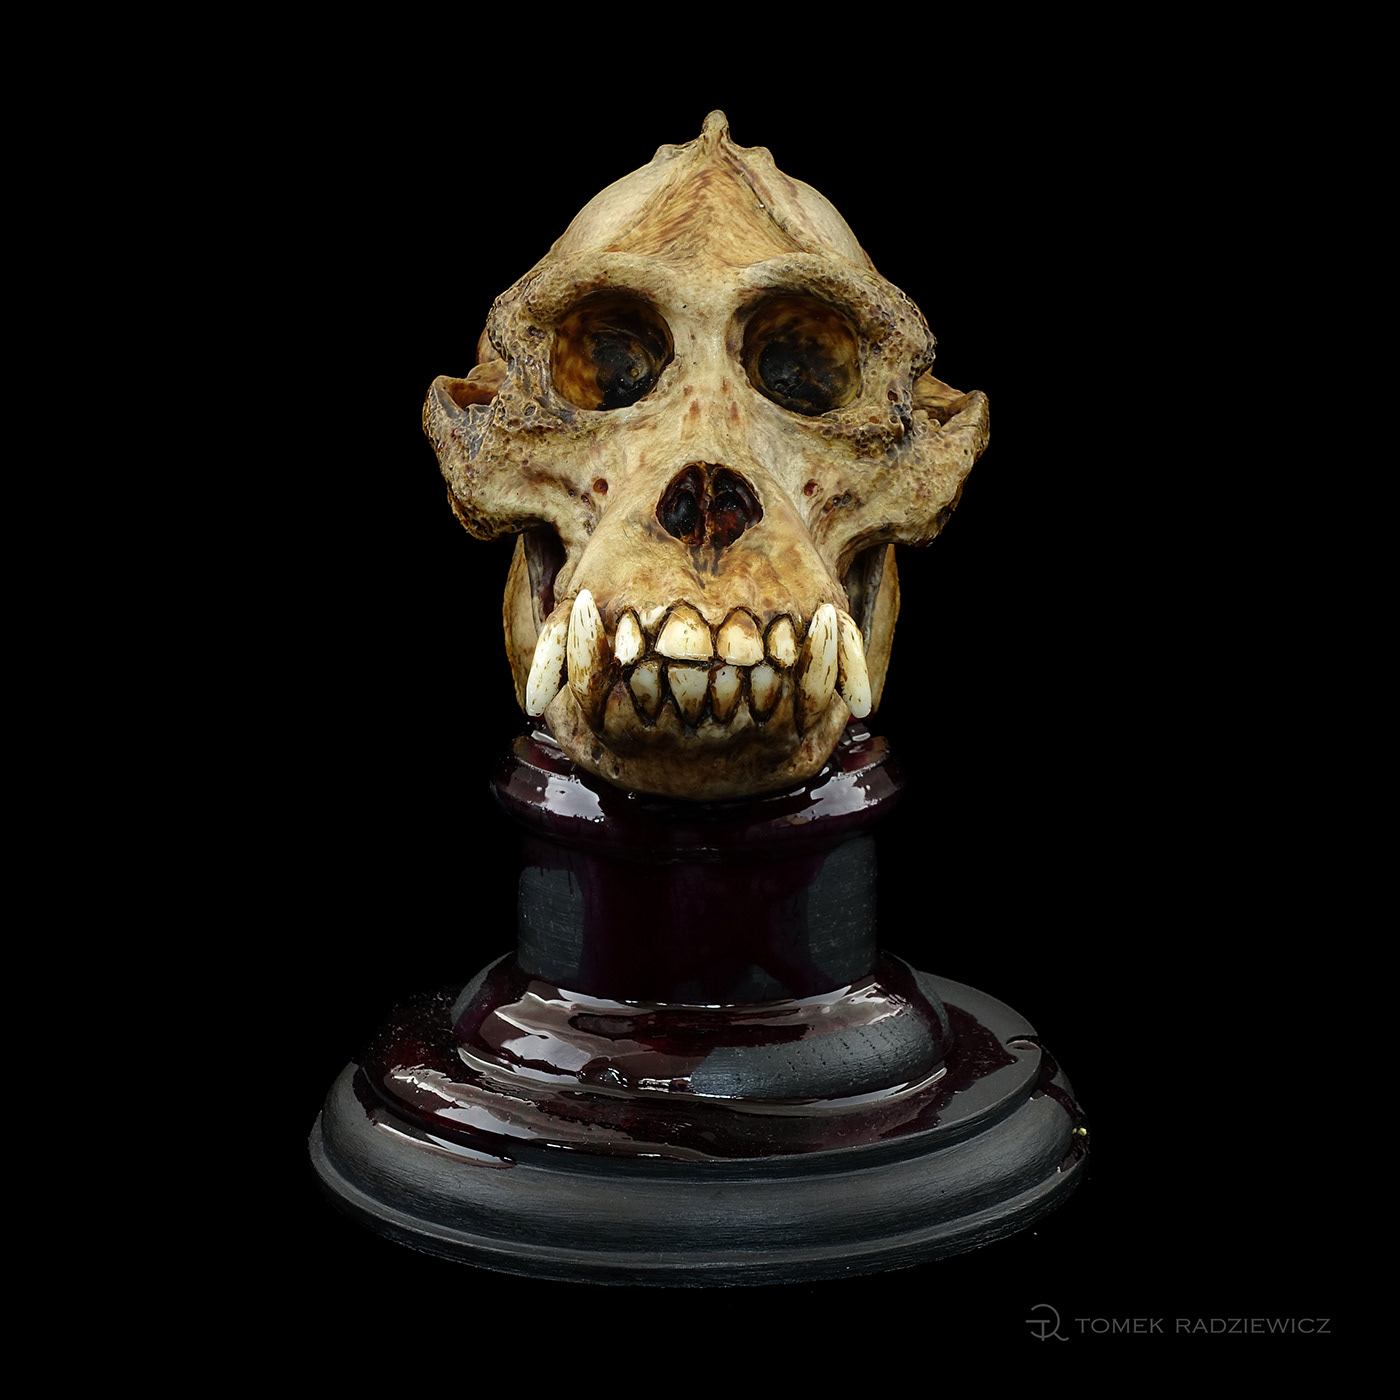 characterdesign orangutan sculpture skull